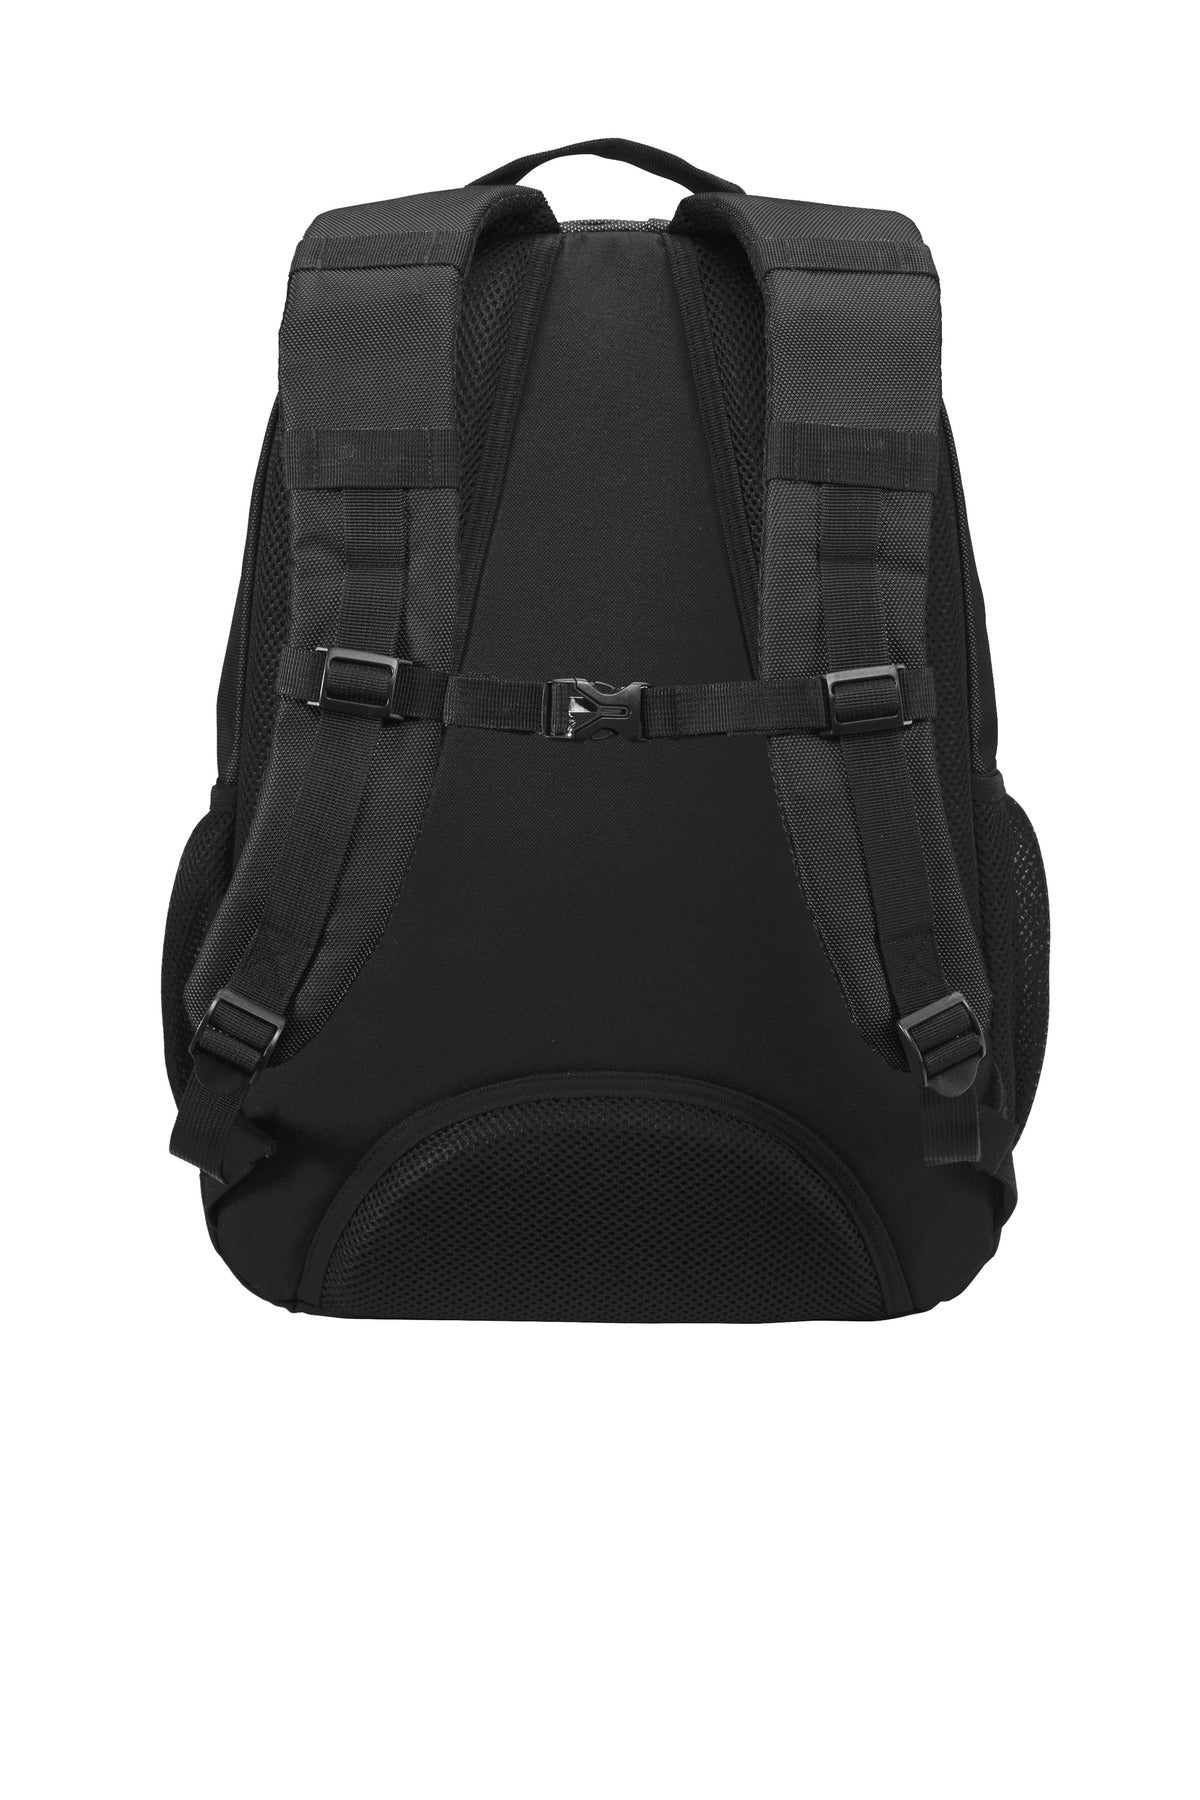 Port Authority Xtreme Backpack. BG207